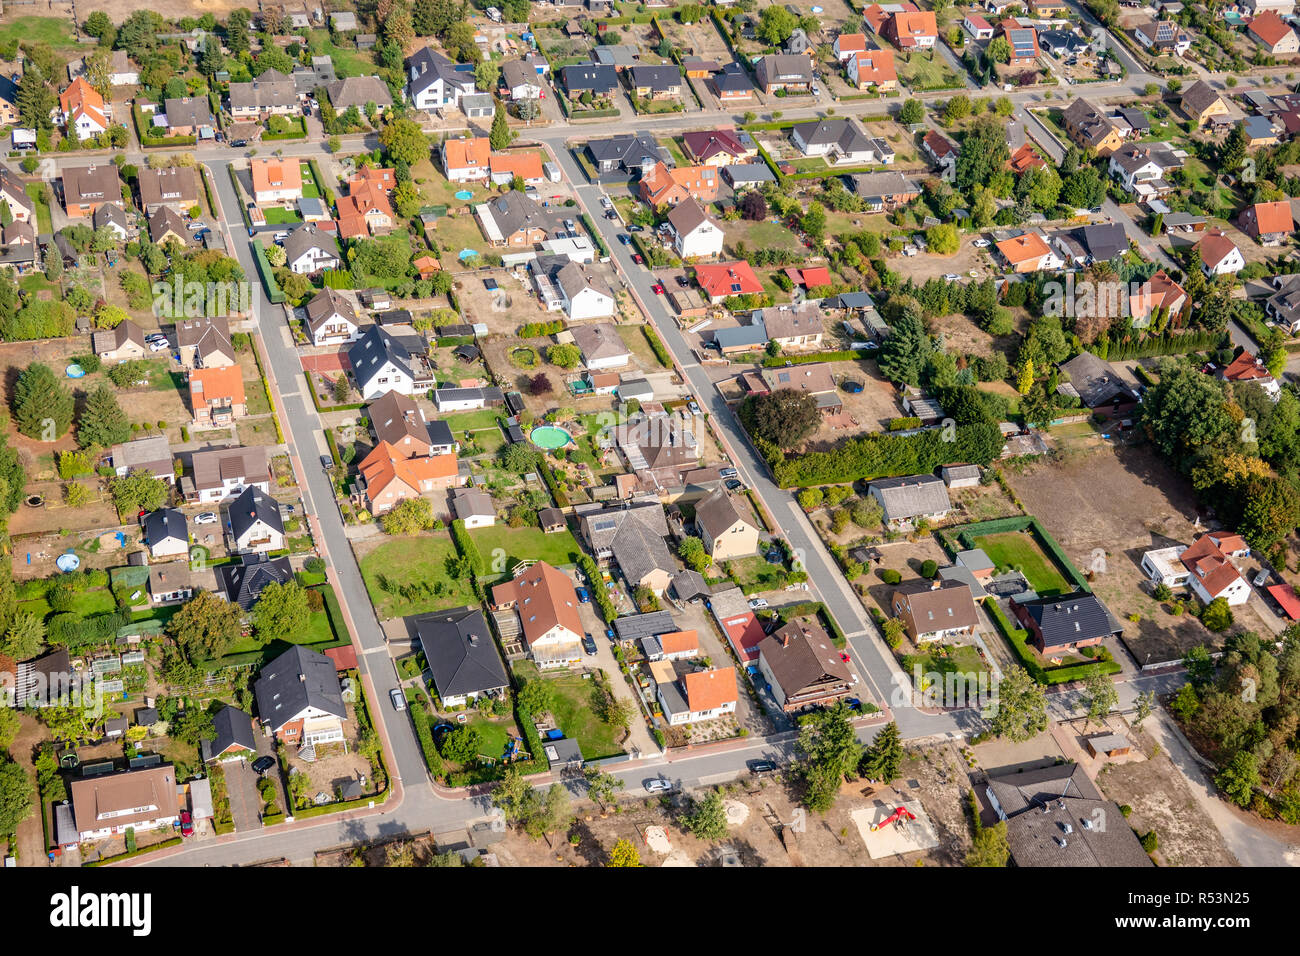 Vista aerea di un sobborgo tedesco con strade e tante piccole case per famiglie, fotografata da un girocottero Foto Stock